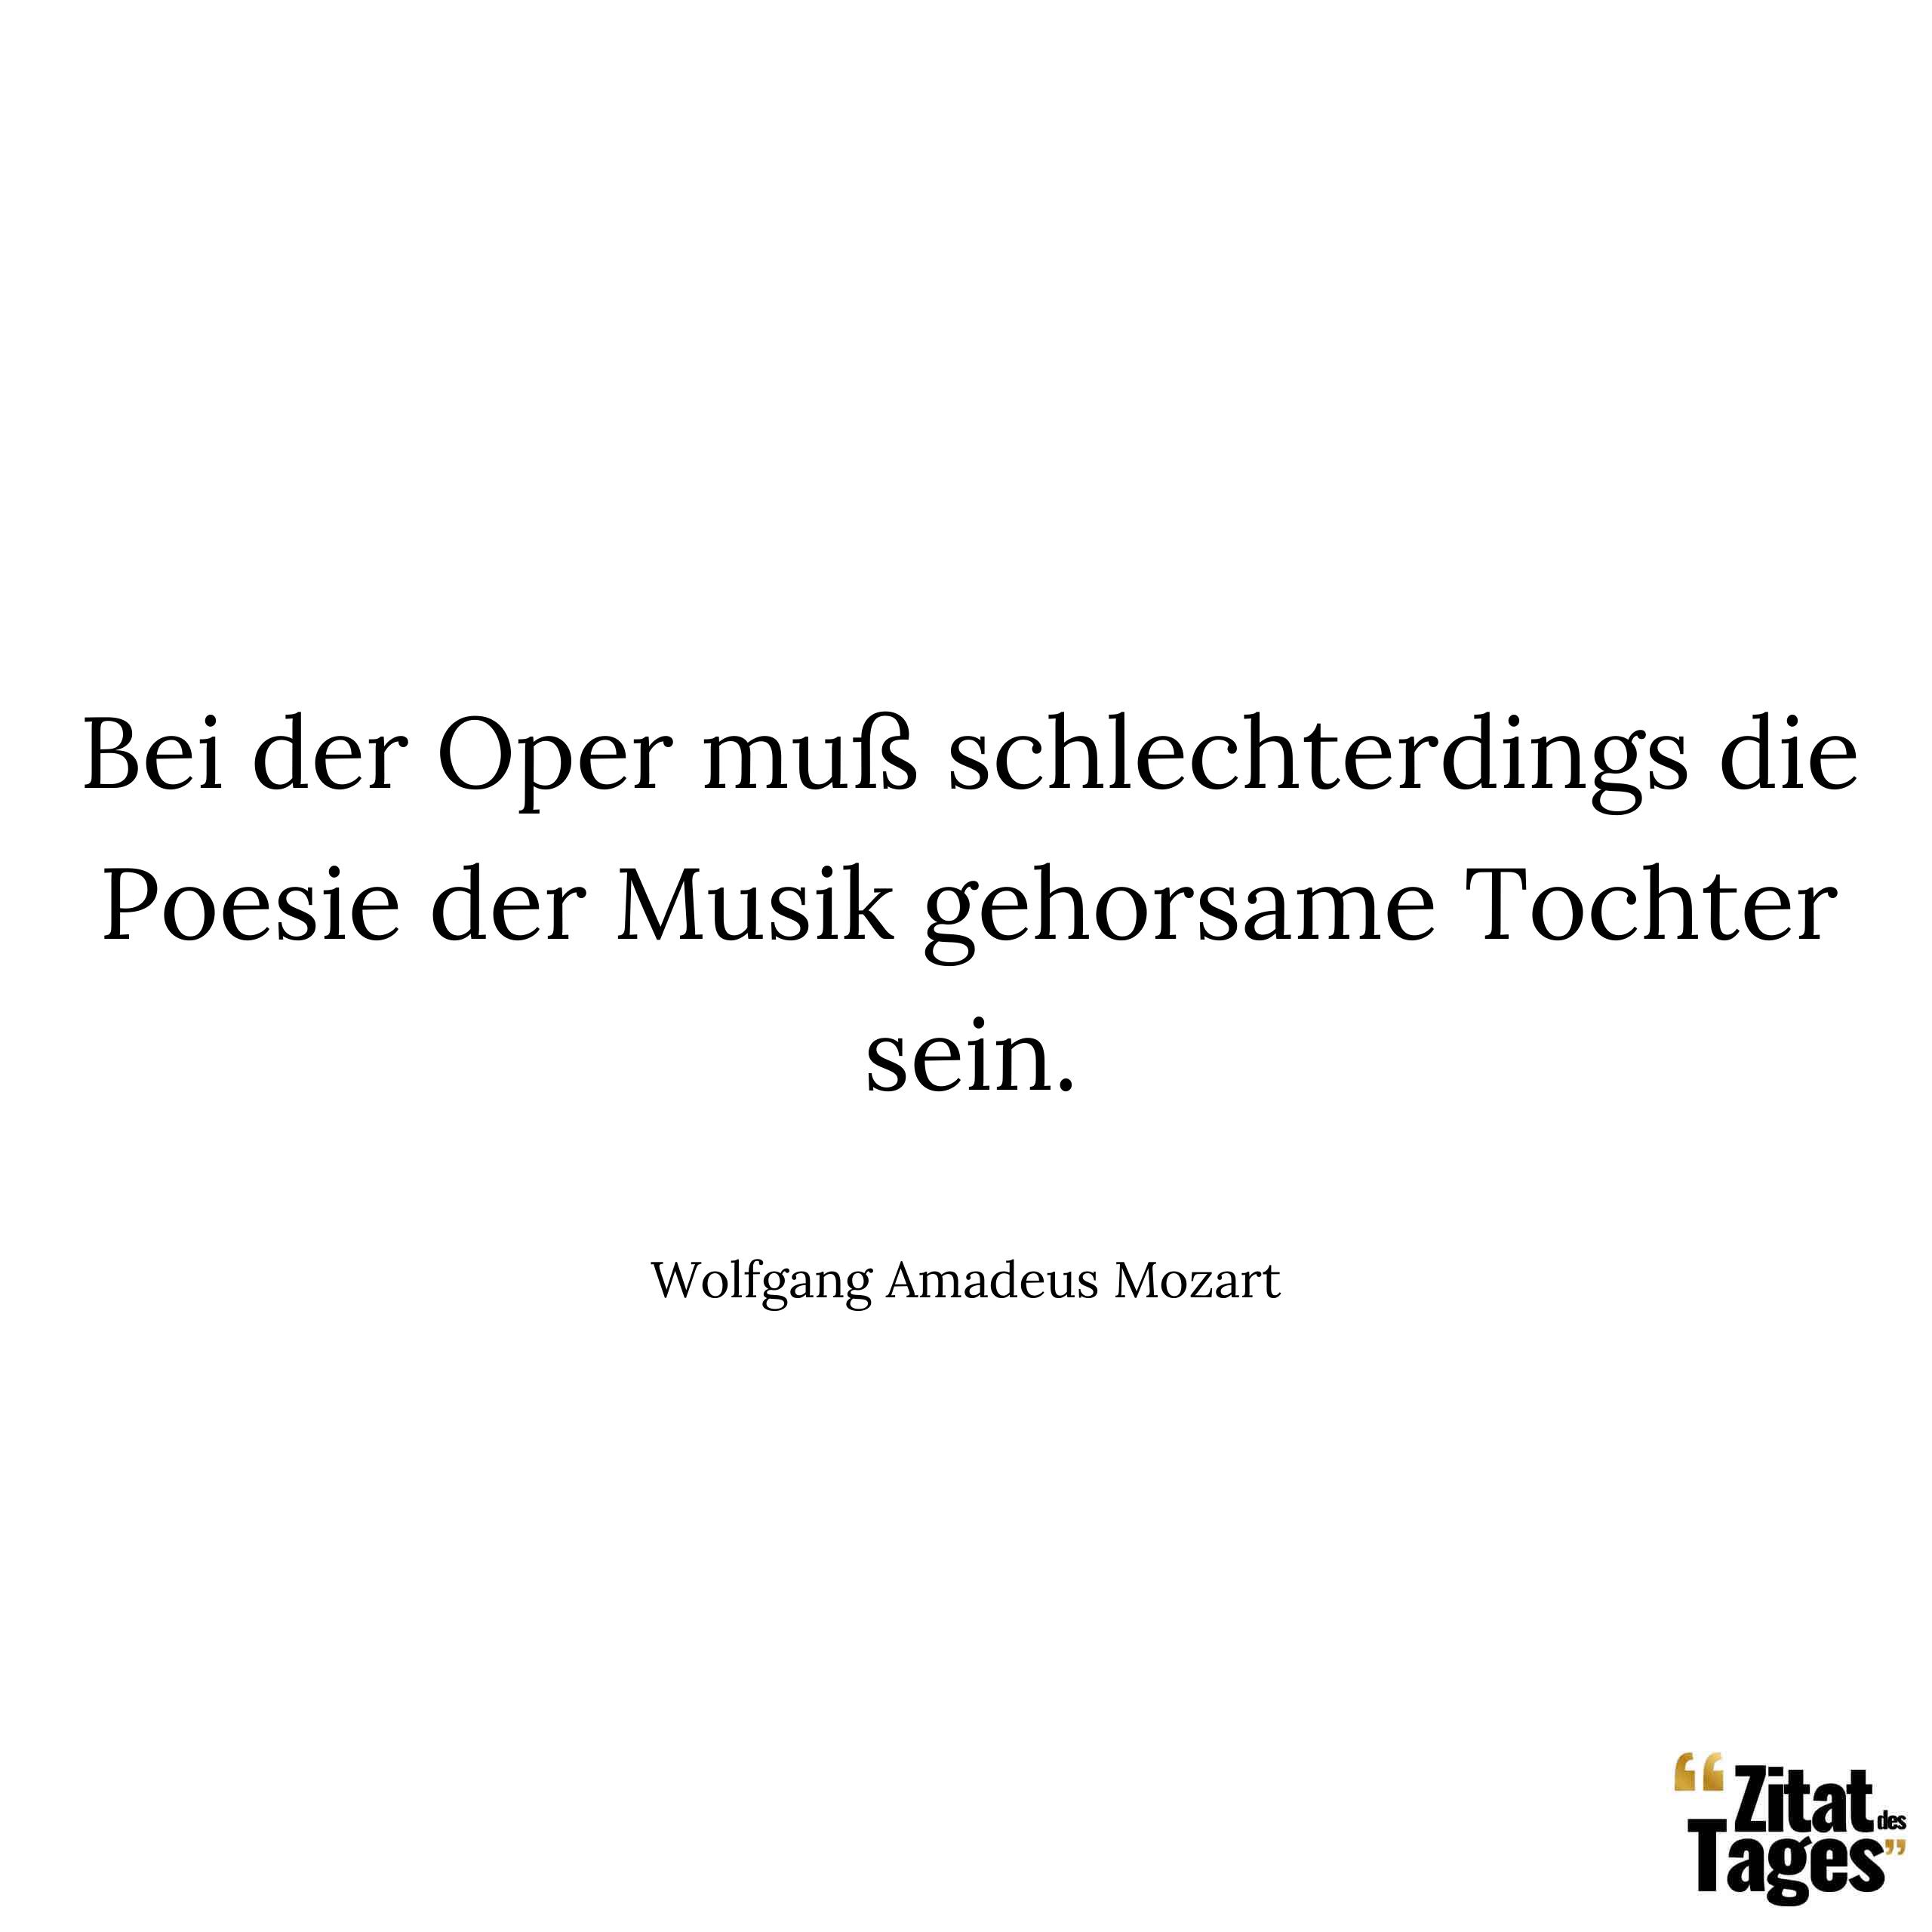 Bei der Oper muß schlechterdings die Poesie der Musik gehorsame Tochter sein. - Wolfgang Amadeus Mozart